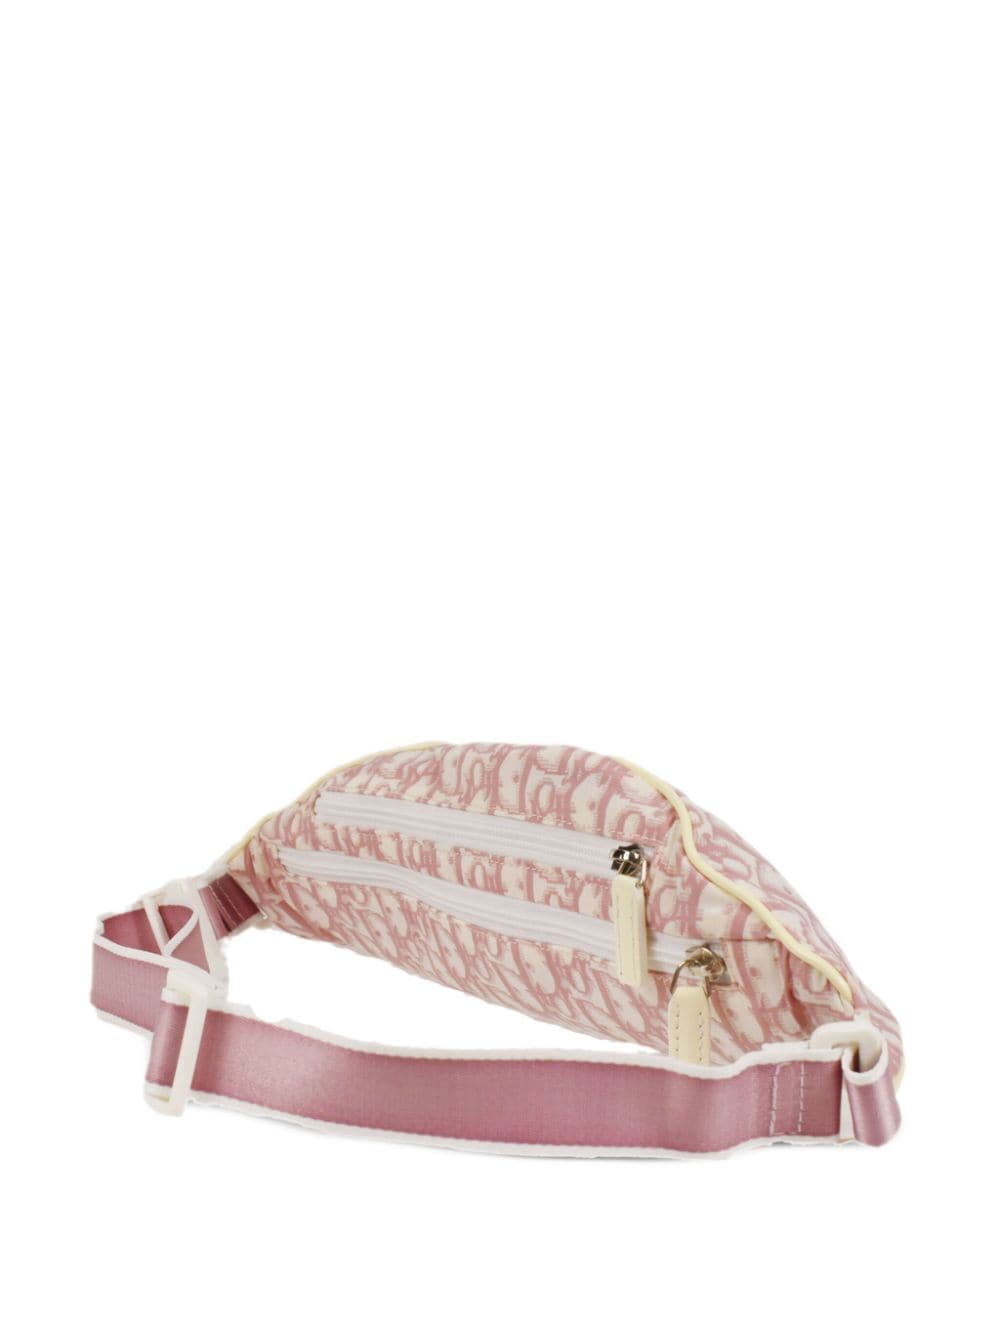 Pre-owned Dior 2004  Trotter Belt Bag In Pink